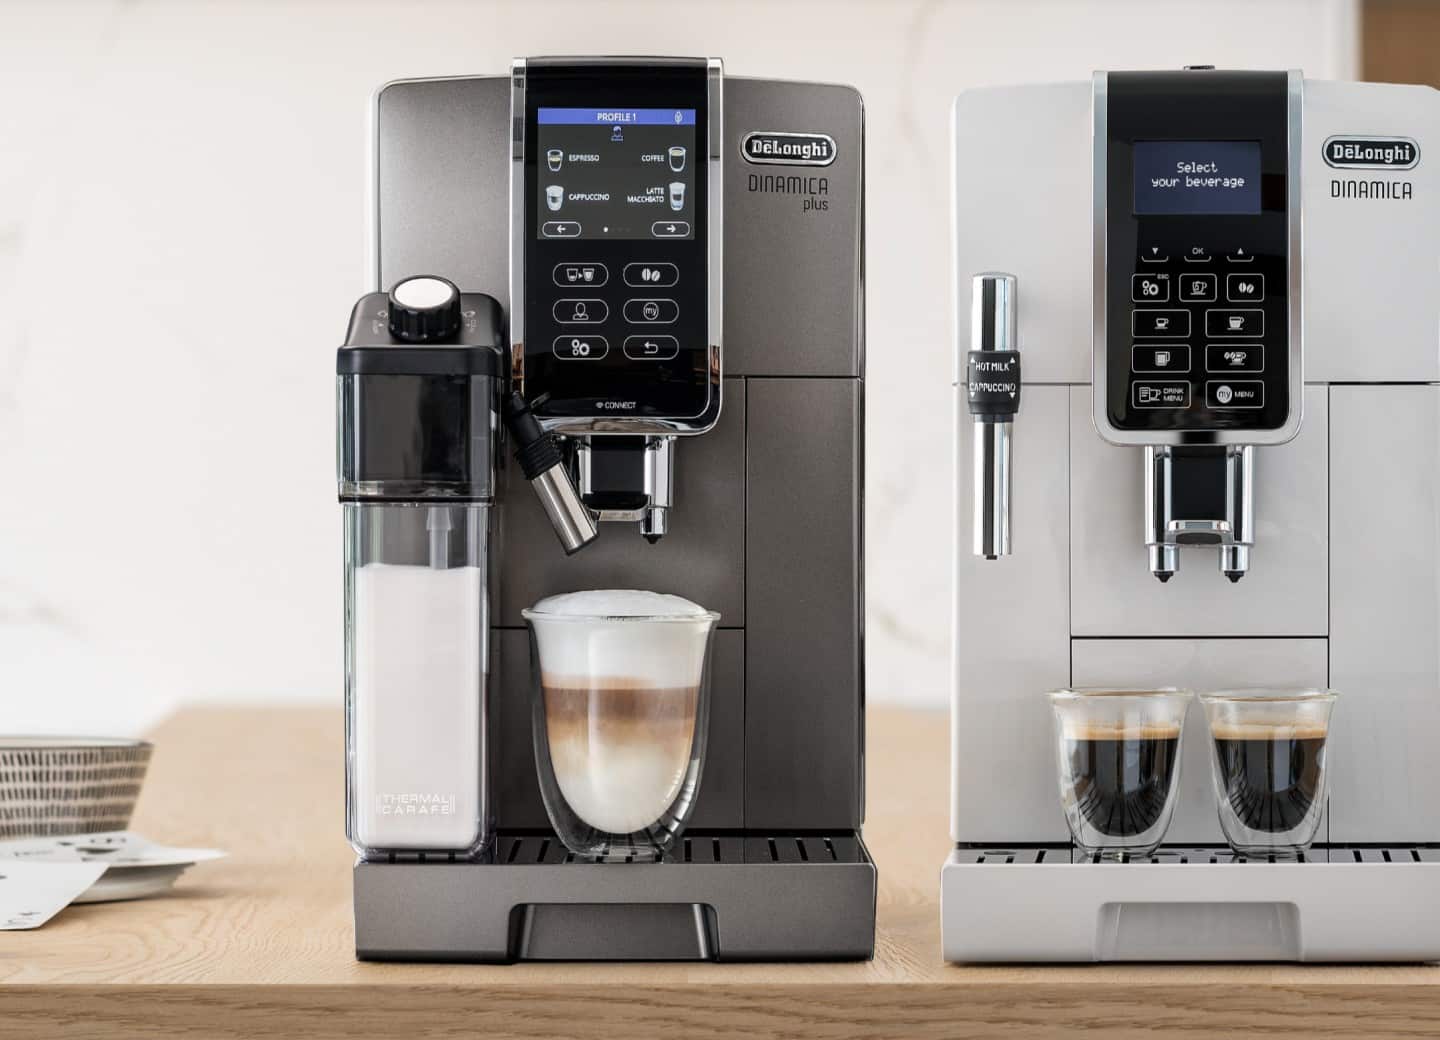 No más cápsula de café:  rebaja la cafetera superautomática De'Longhi  que prepara 18 bebidas de café con solo pulsar un botón